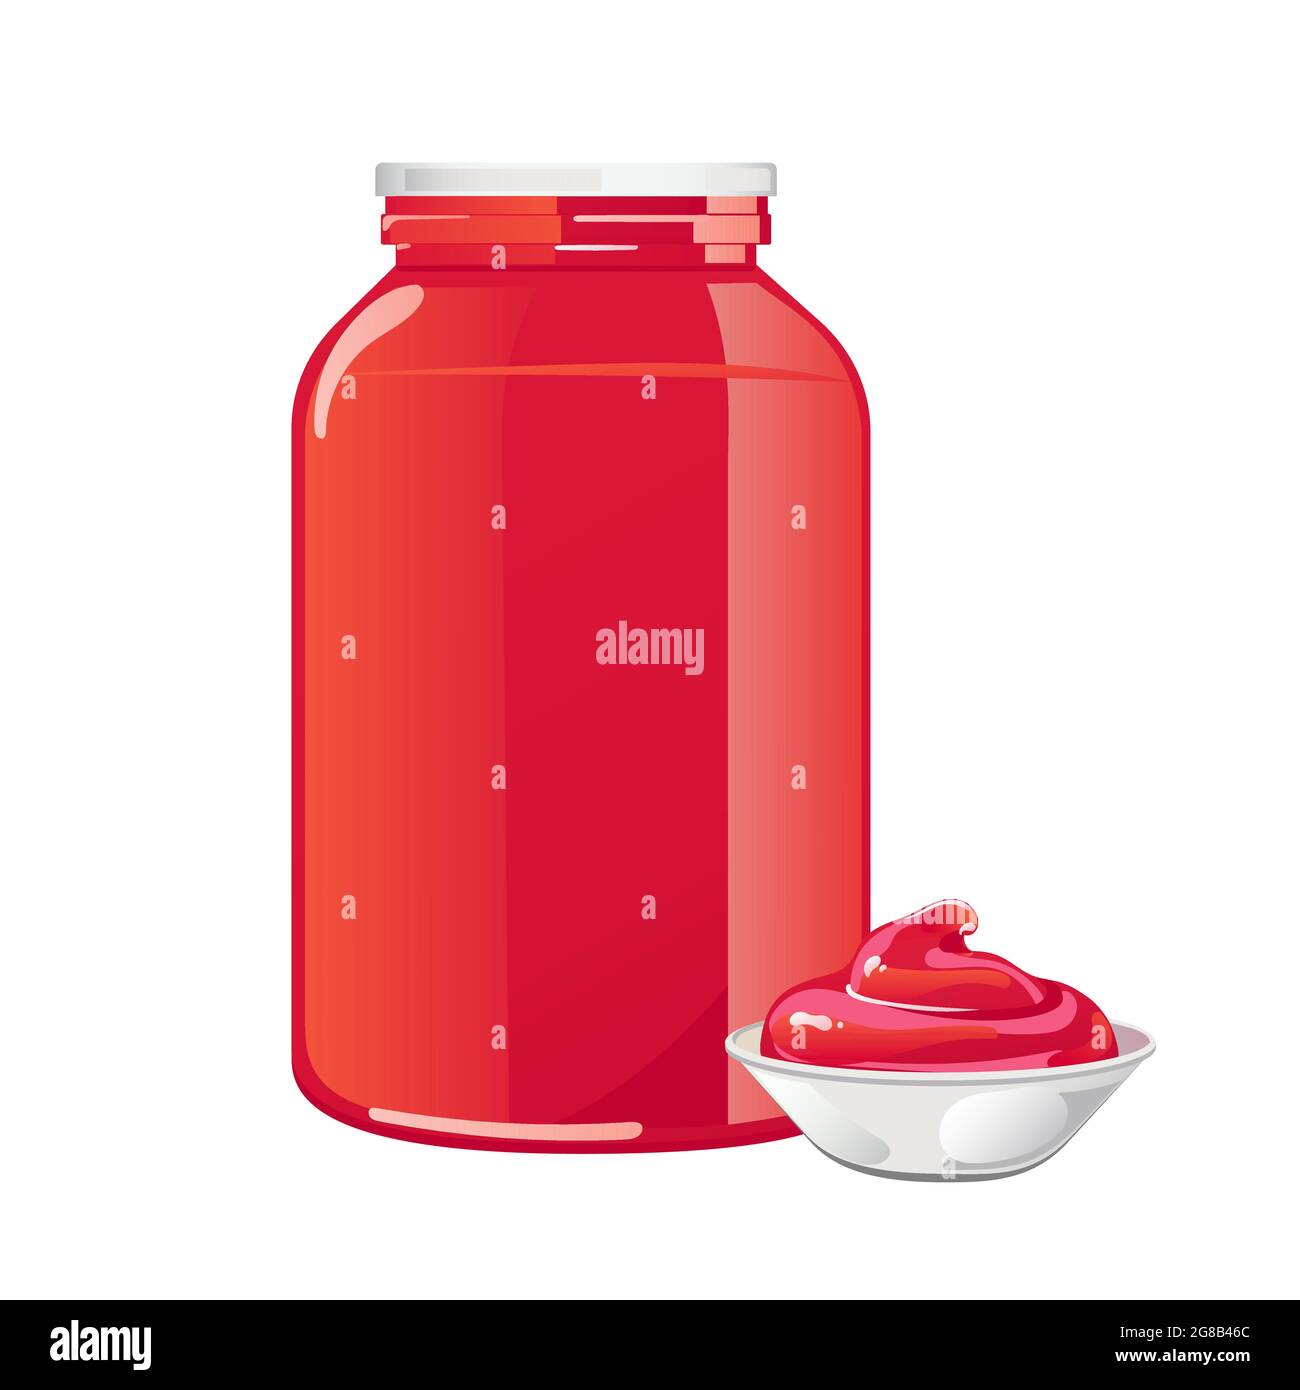 Glas mit Tomatensauce und weißem Deckel. Rote natürliche würzige Würze in Behälter ohne Etikett. Vektor-Illustration in flachen Cartoon-Design isoliert auf weißem Hintergrund. Stock Vektor